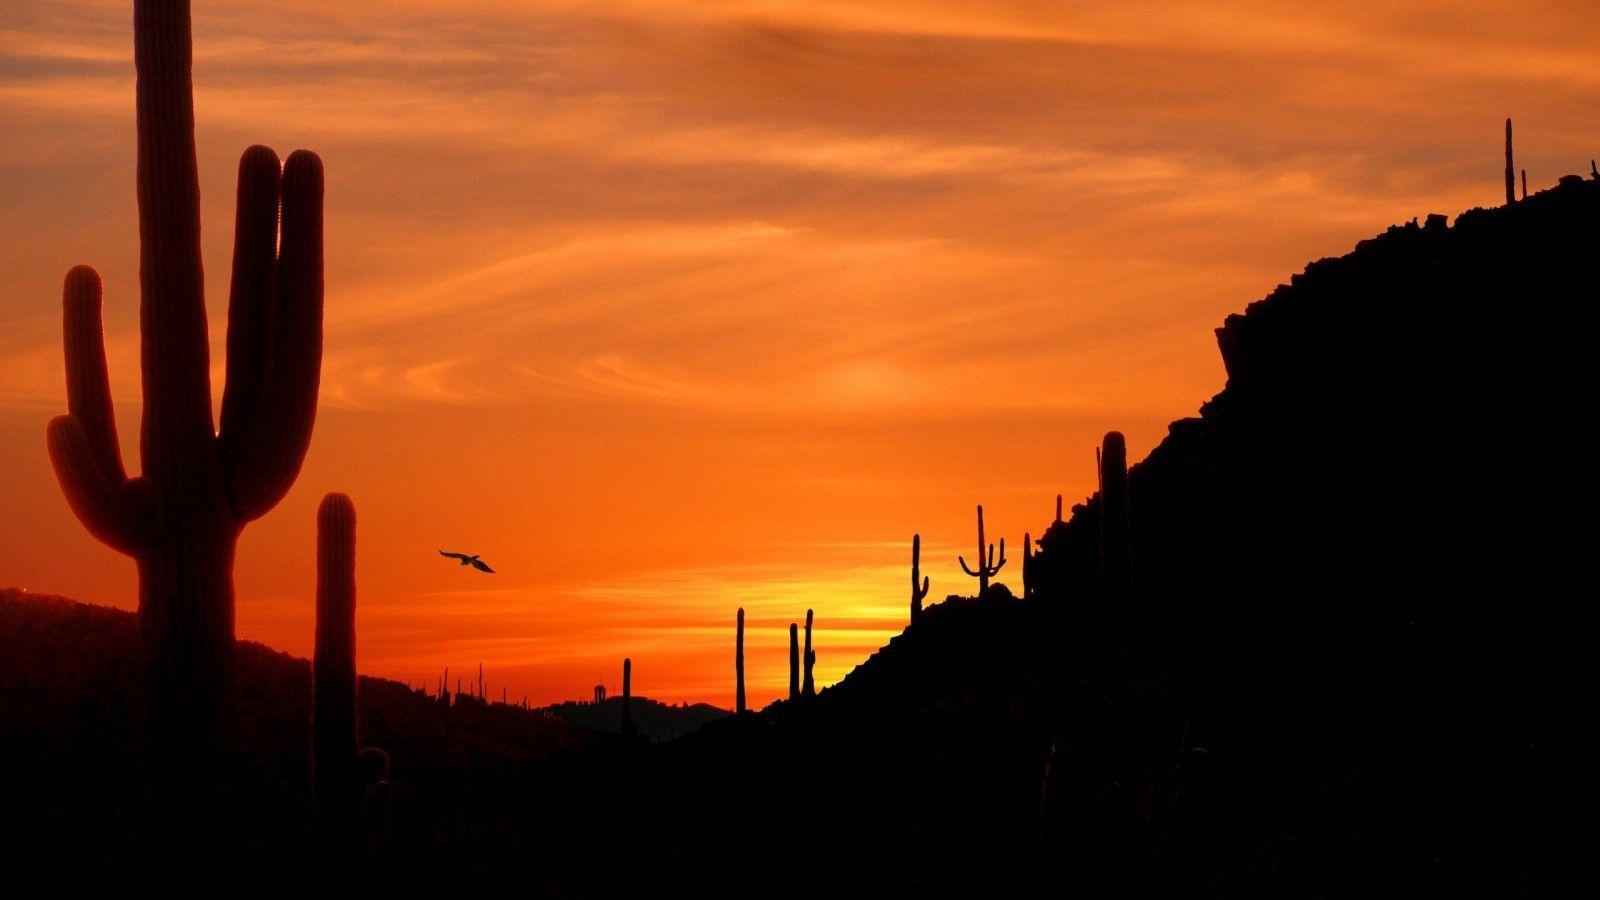 Desert Sunset Picture. High Definition Wallpaper, High